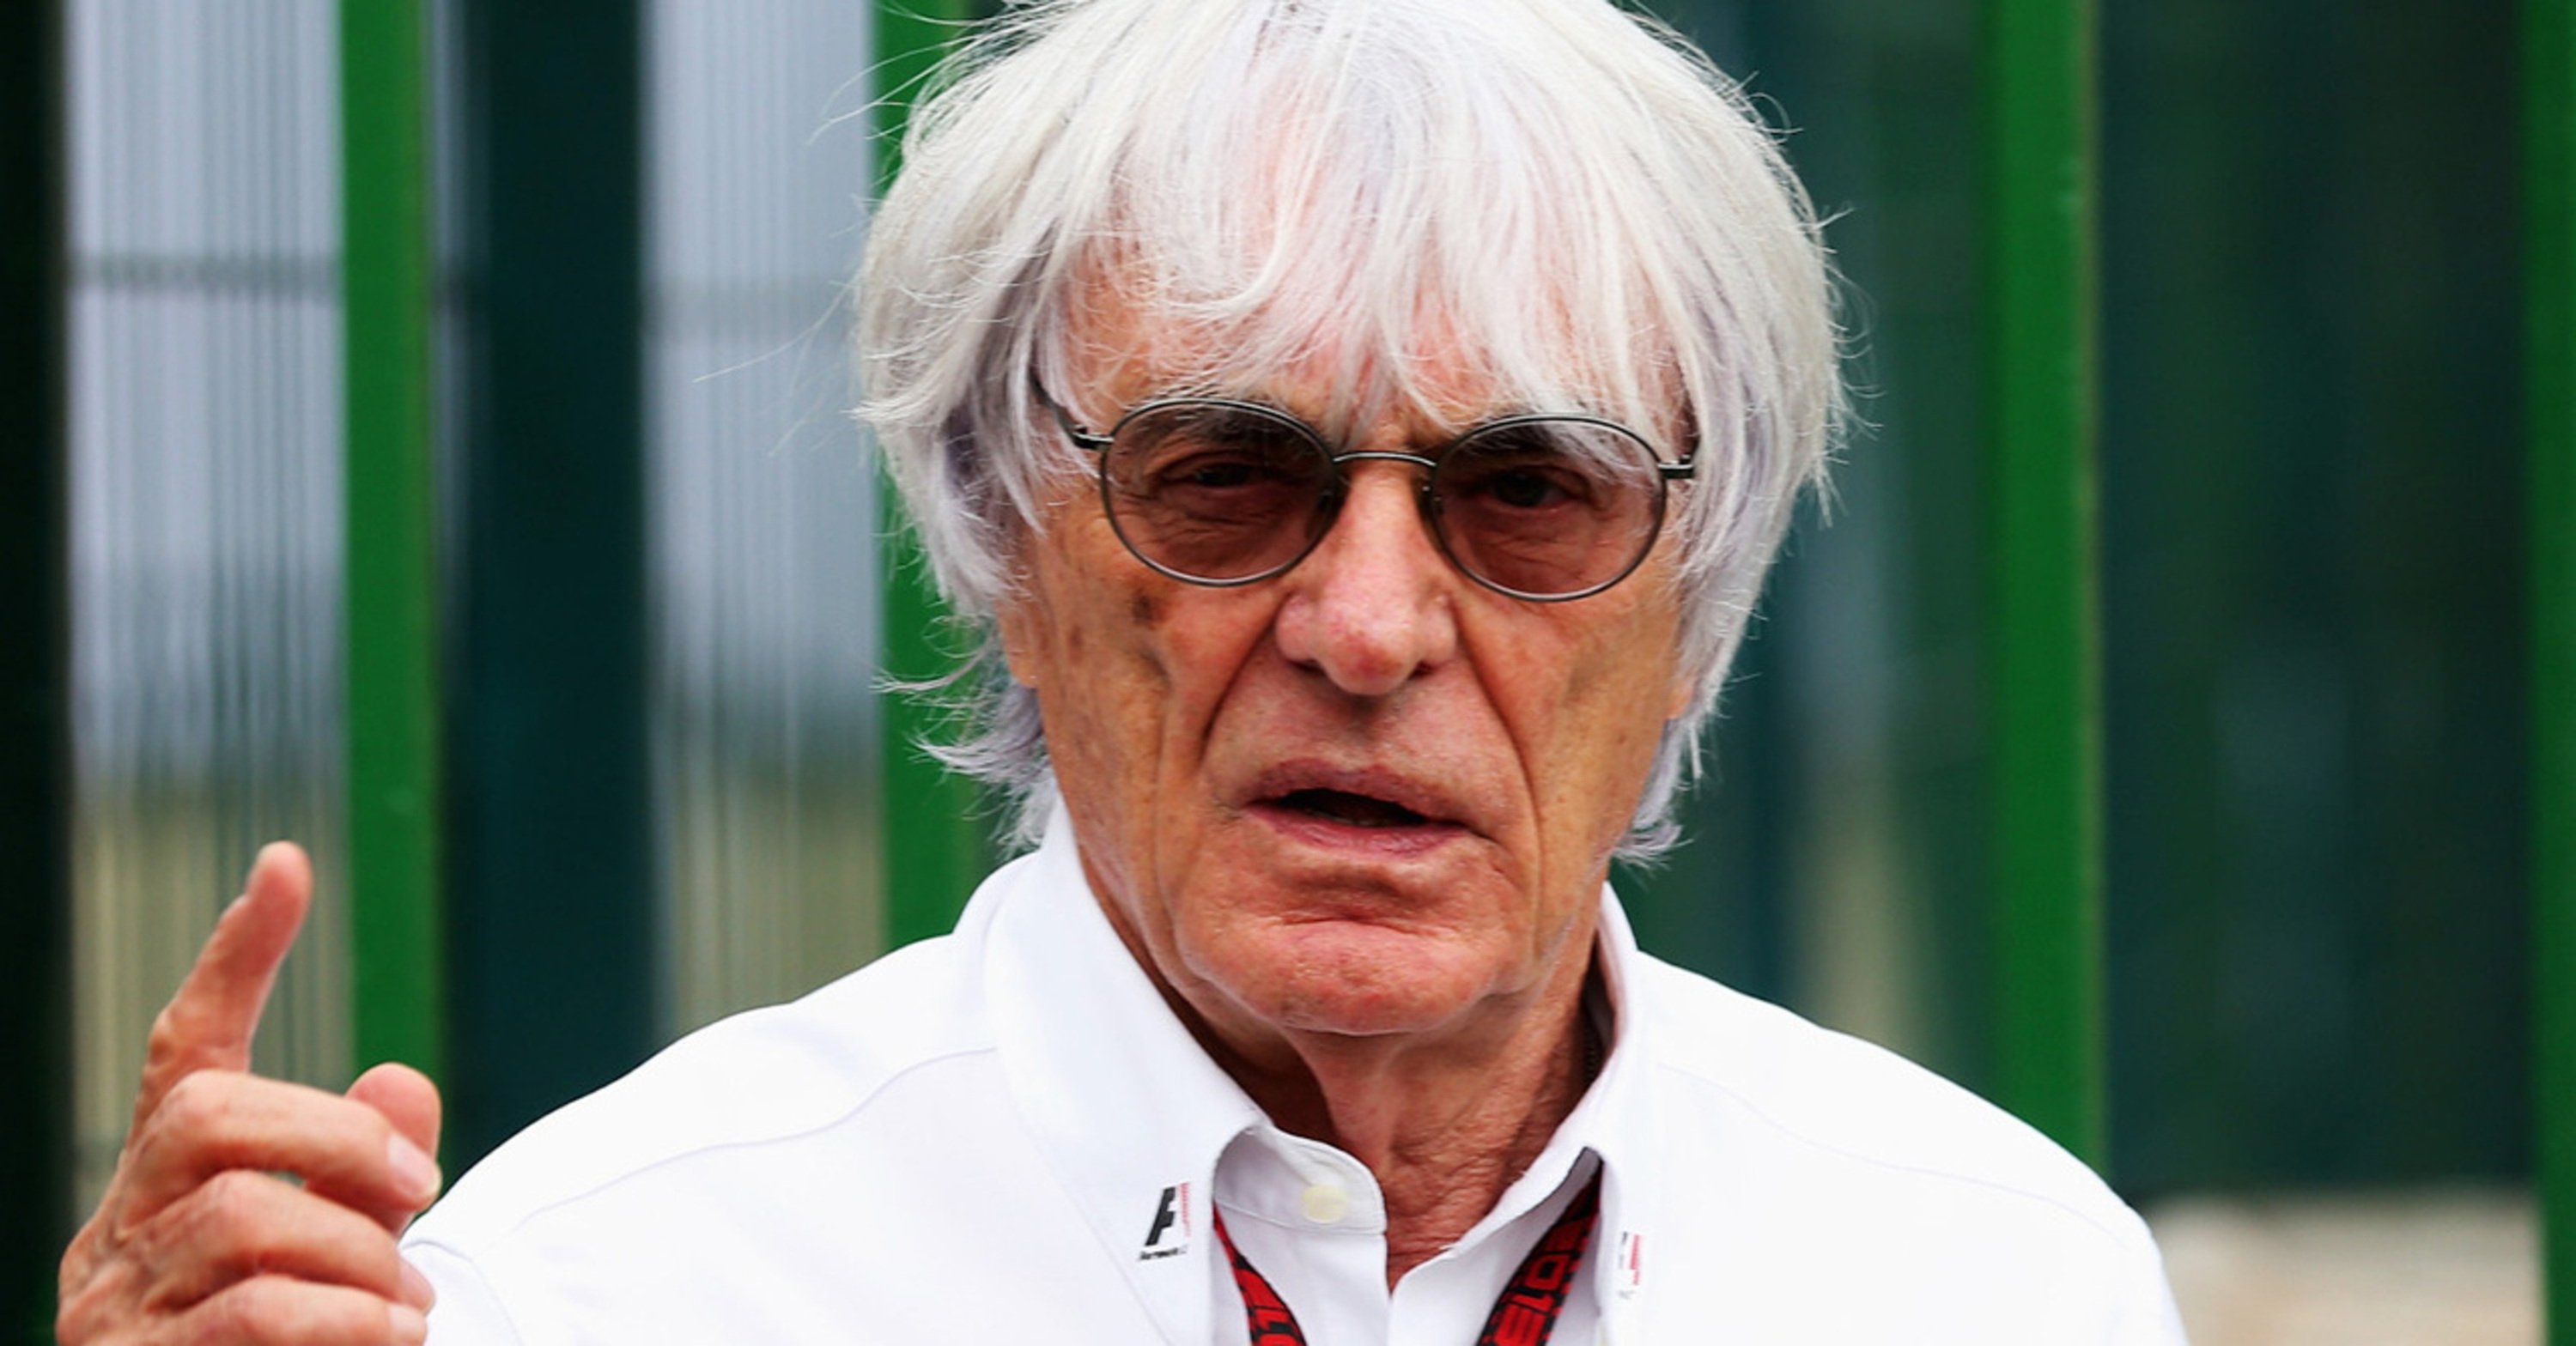 F1, Bernie Ecclestone arrestato in Brasile